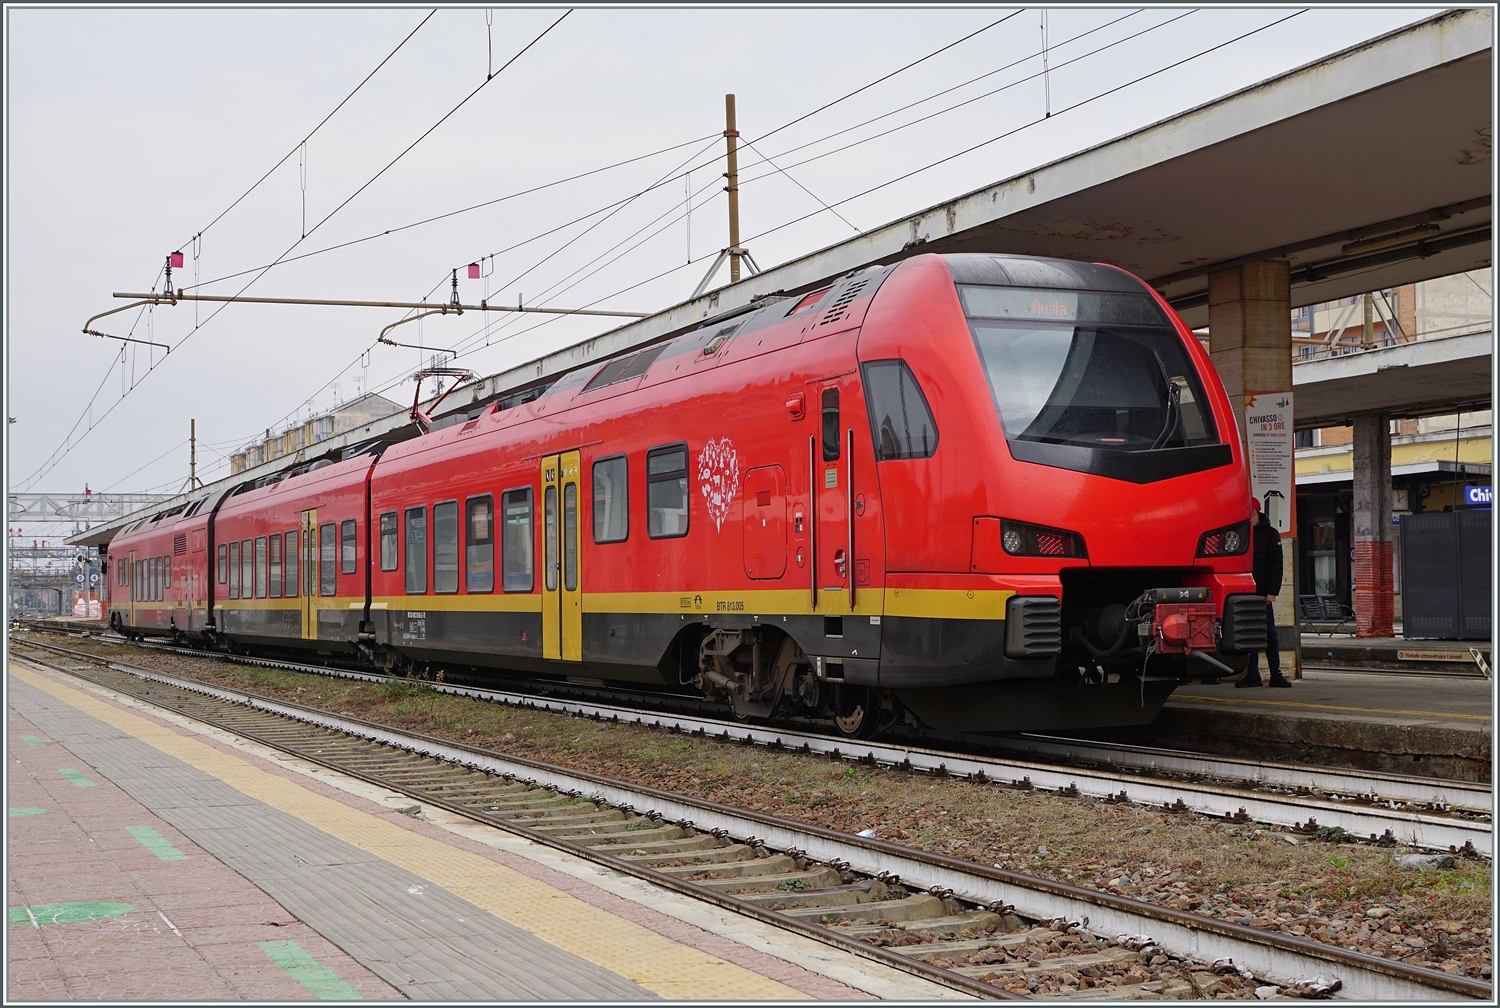 Der bimodulare FS Trenitalia BUM BTR 831 005 ist von Torino kommend in Chivasso angekommen und fährt nach dem Richtungswechsel nach Aosta weiter.

24. Februar 2023